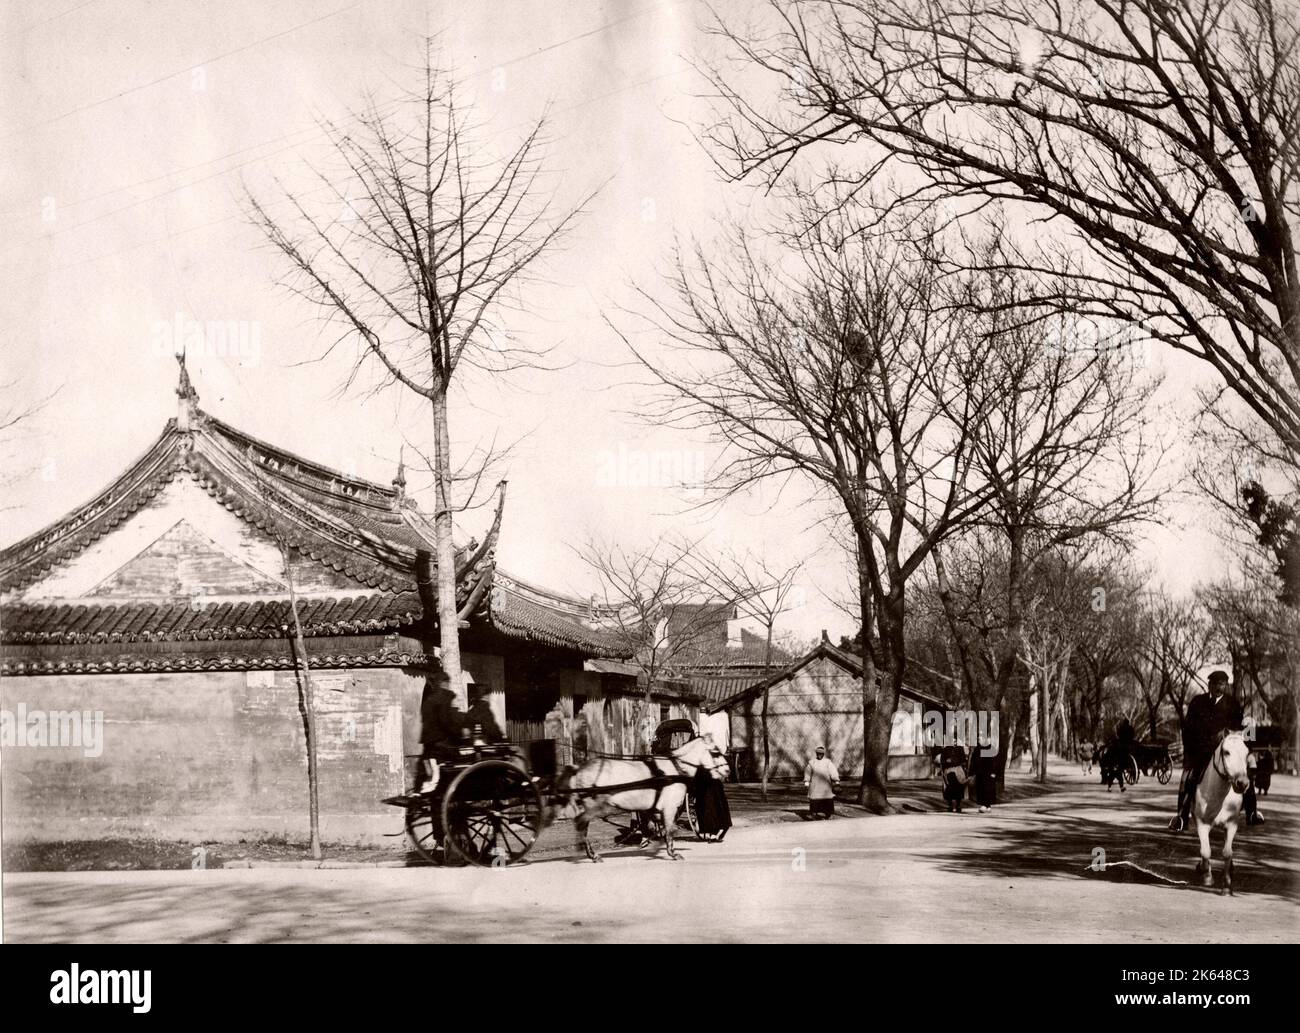 Rue corne, r poney et piège probablement Shangahi, Chine Banque D'Images